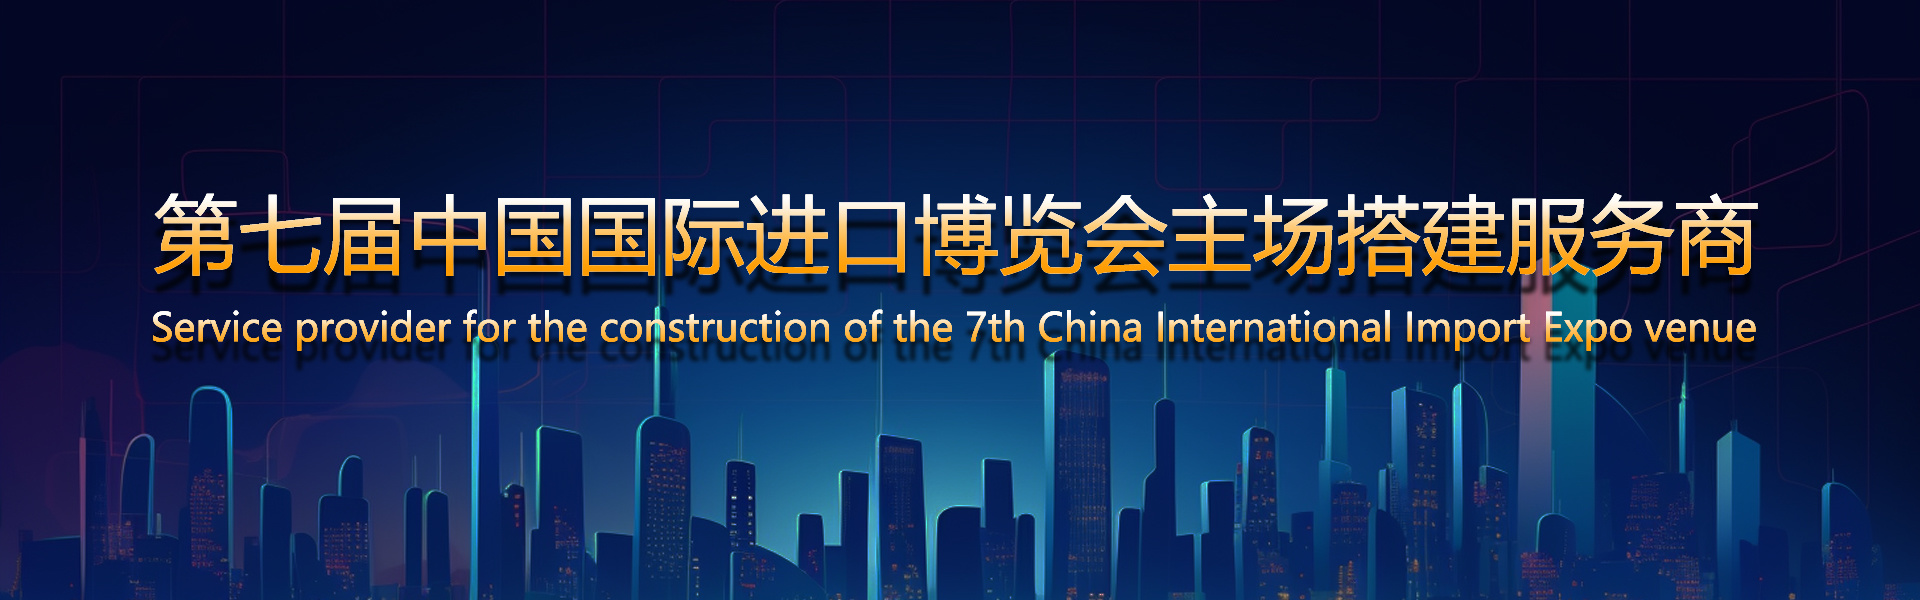 第七届中国国际进口博览会主场搭建服务商